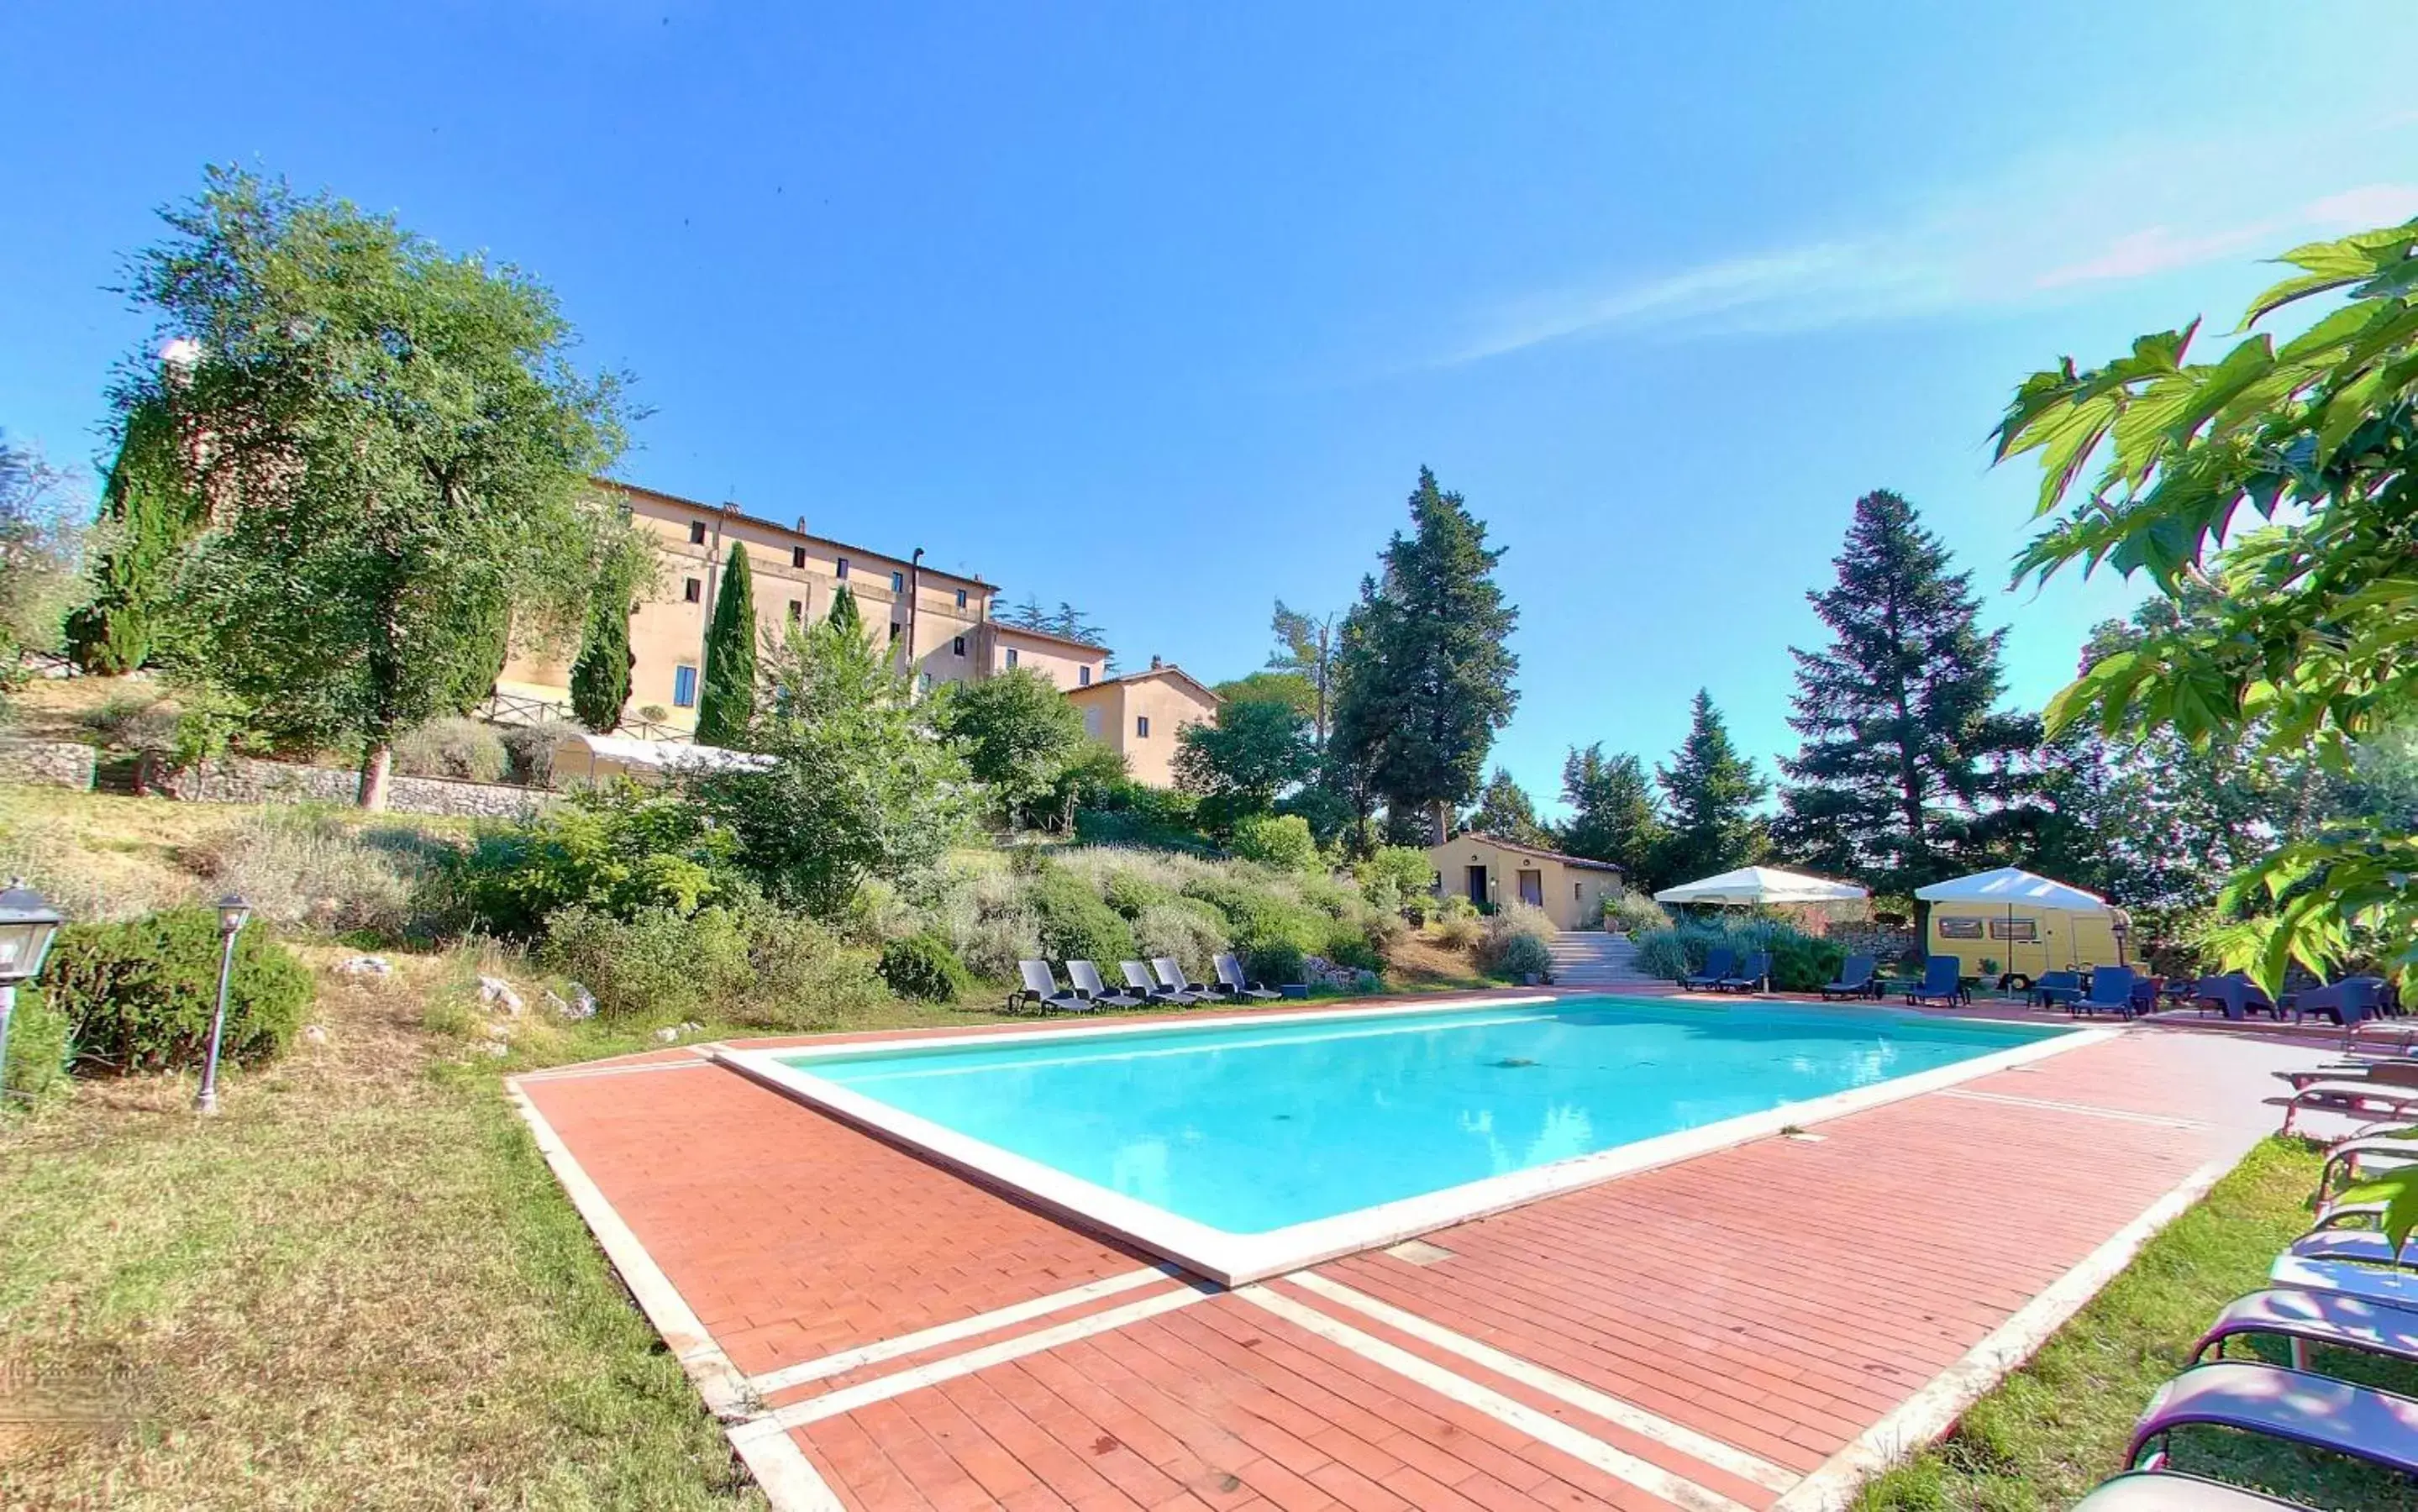 Swimming Pool in Monastero Le Grazie